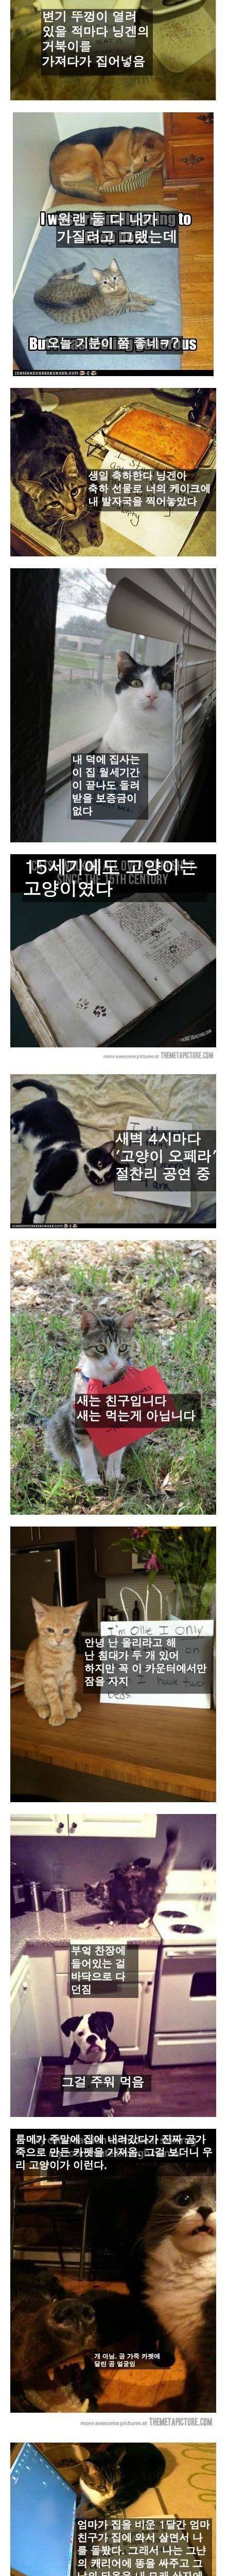 [스압] 잘못을 저지른 고양이들.jpg